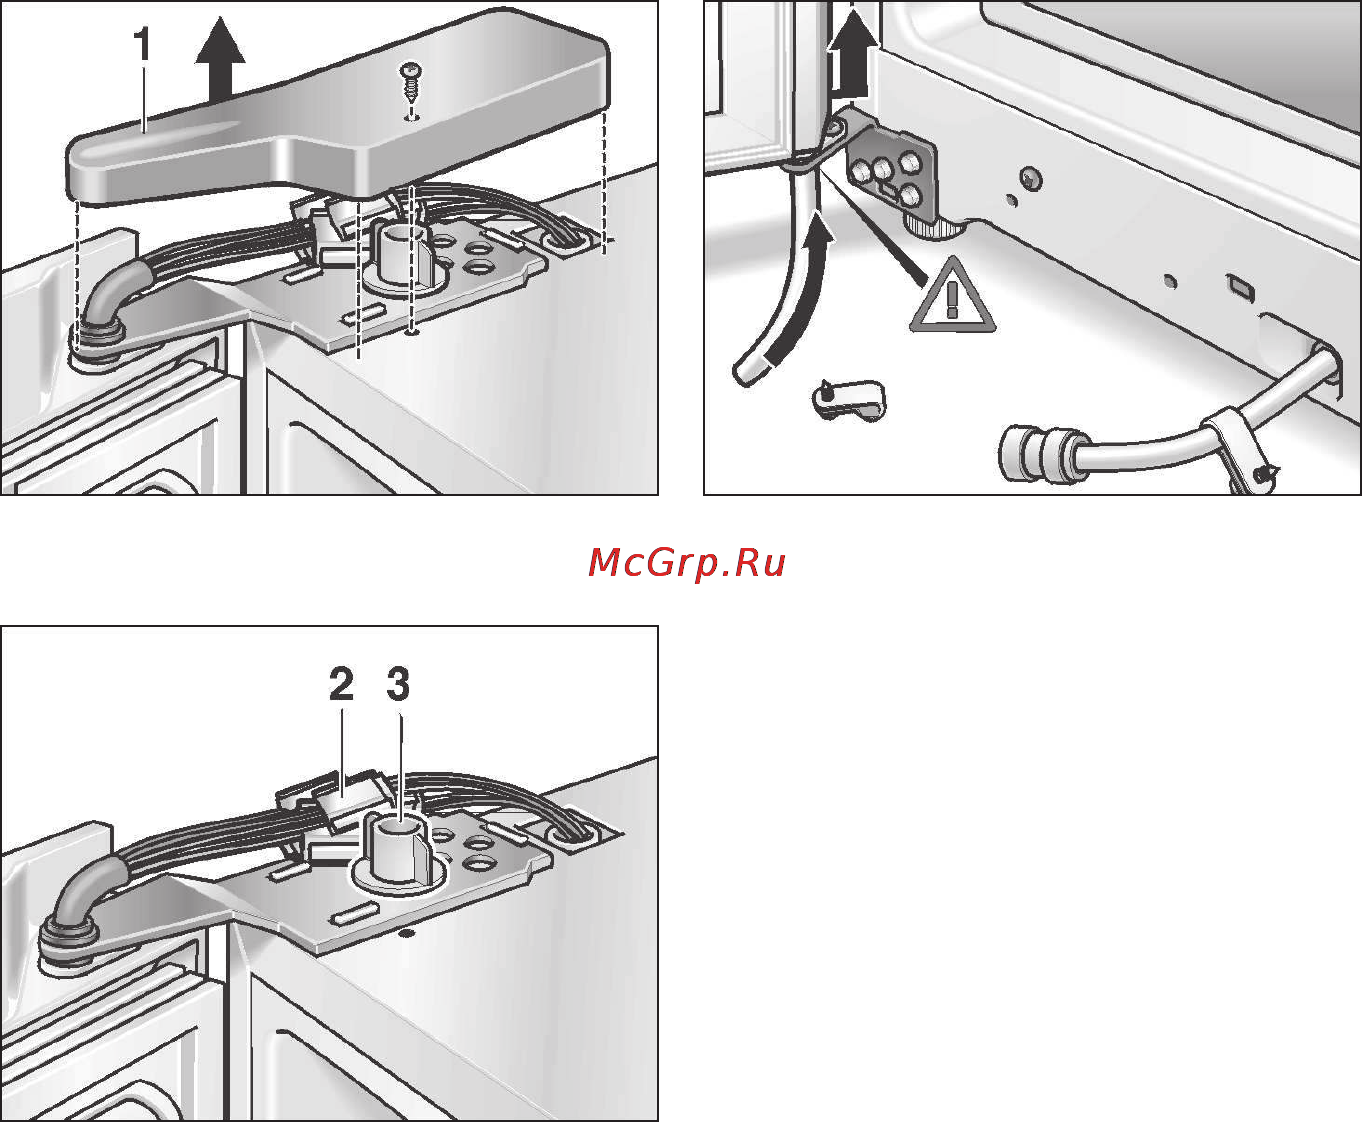 Как перевесить дверь холодильника на другую сторону: пошаговая инструкция